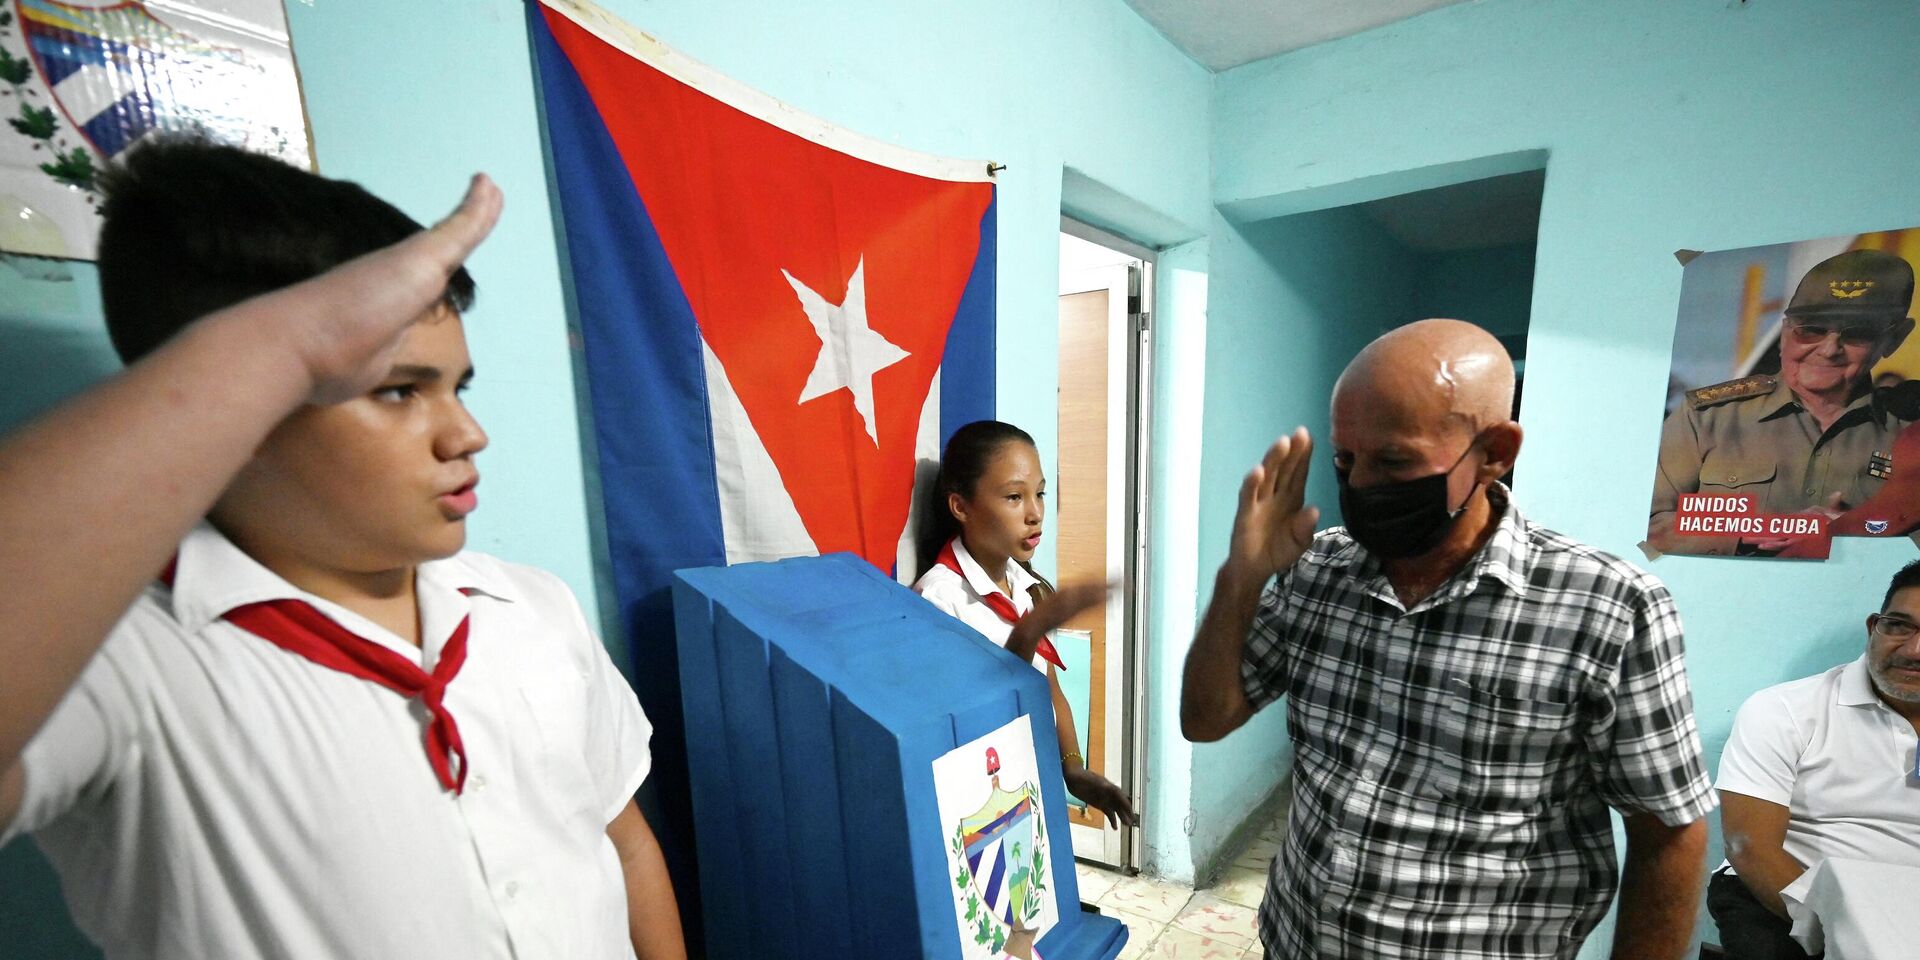 Референдум в Гаване, Куба. 25 сентября 2022 года. - ИноСМИ, 1920, 27.09.2022